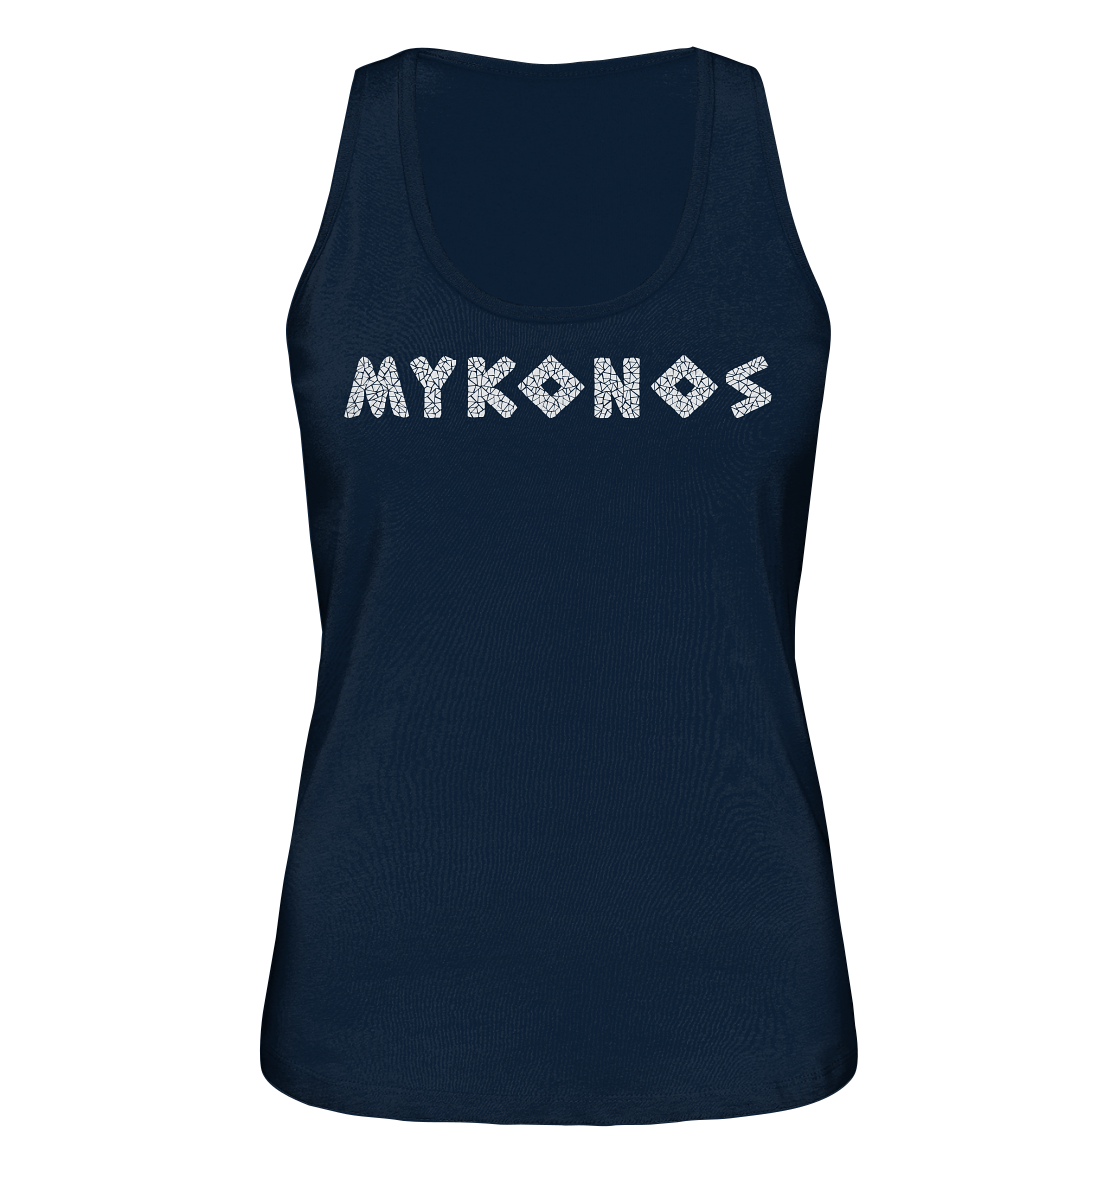 Mykonos Mosaic - Ladies Organic Tank Top